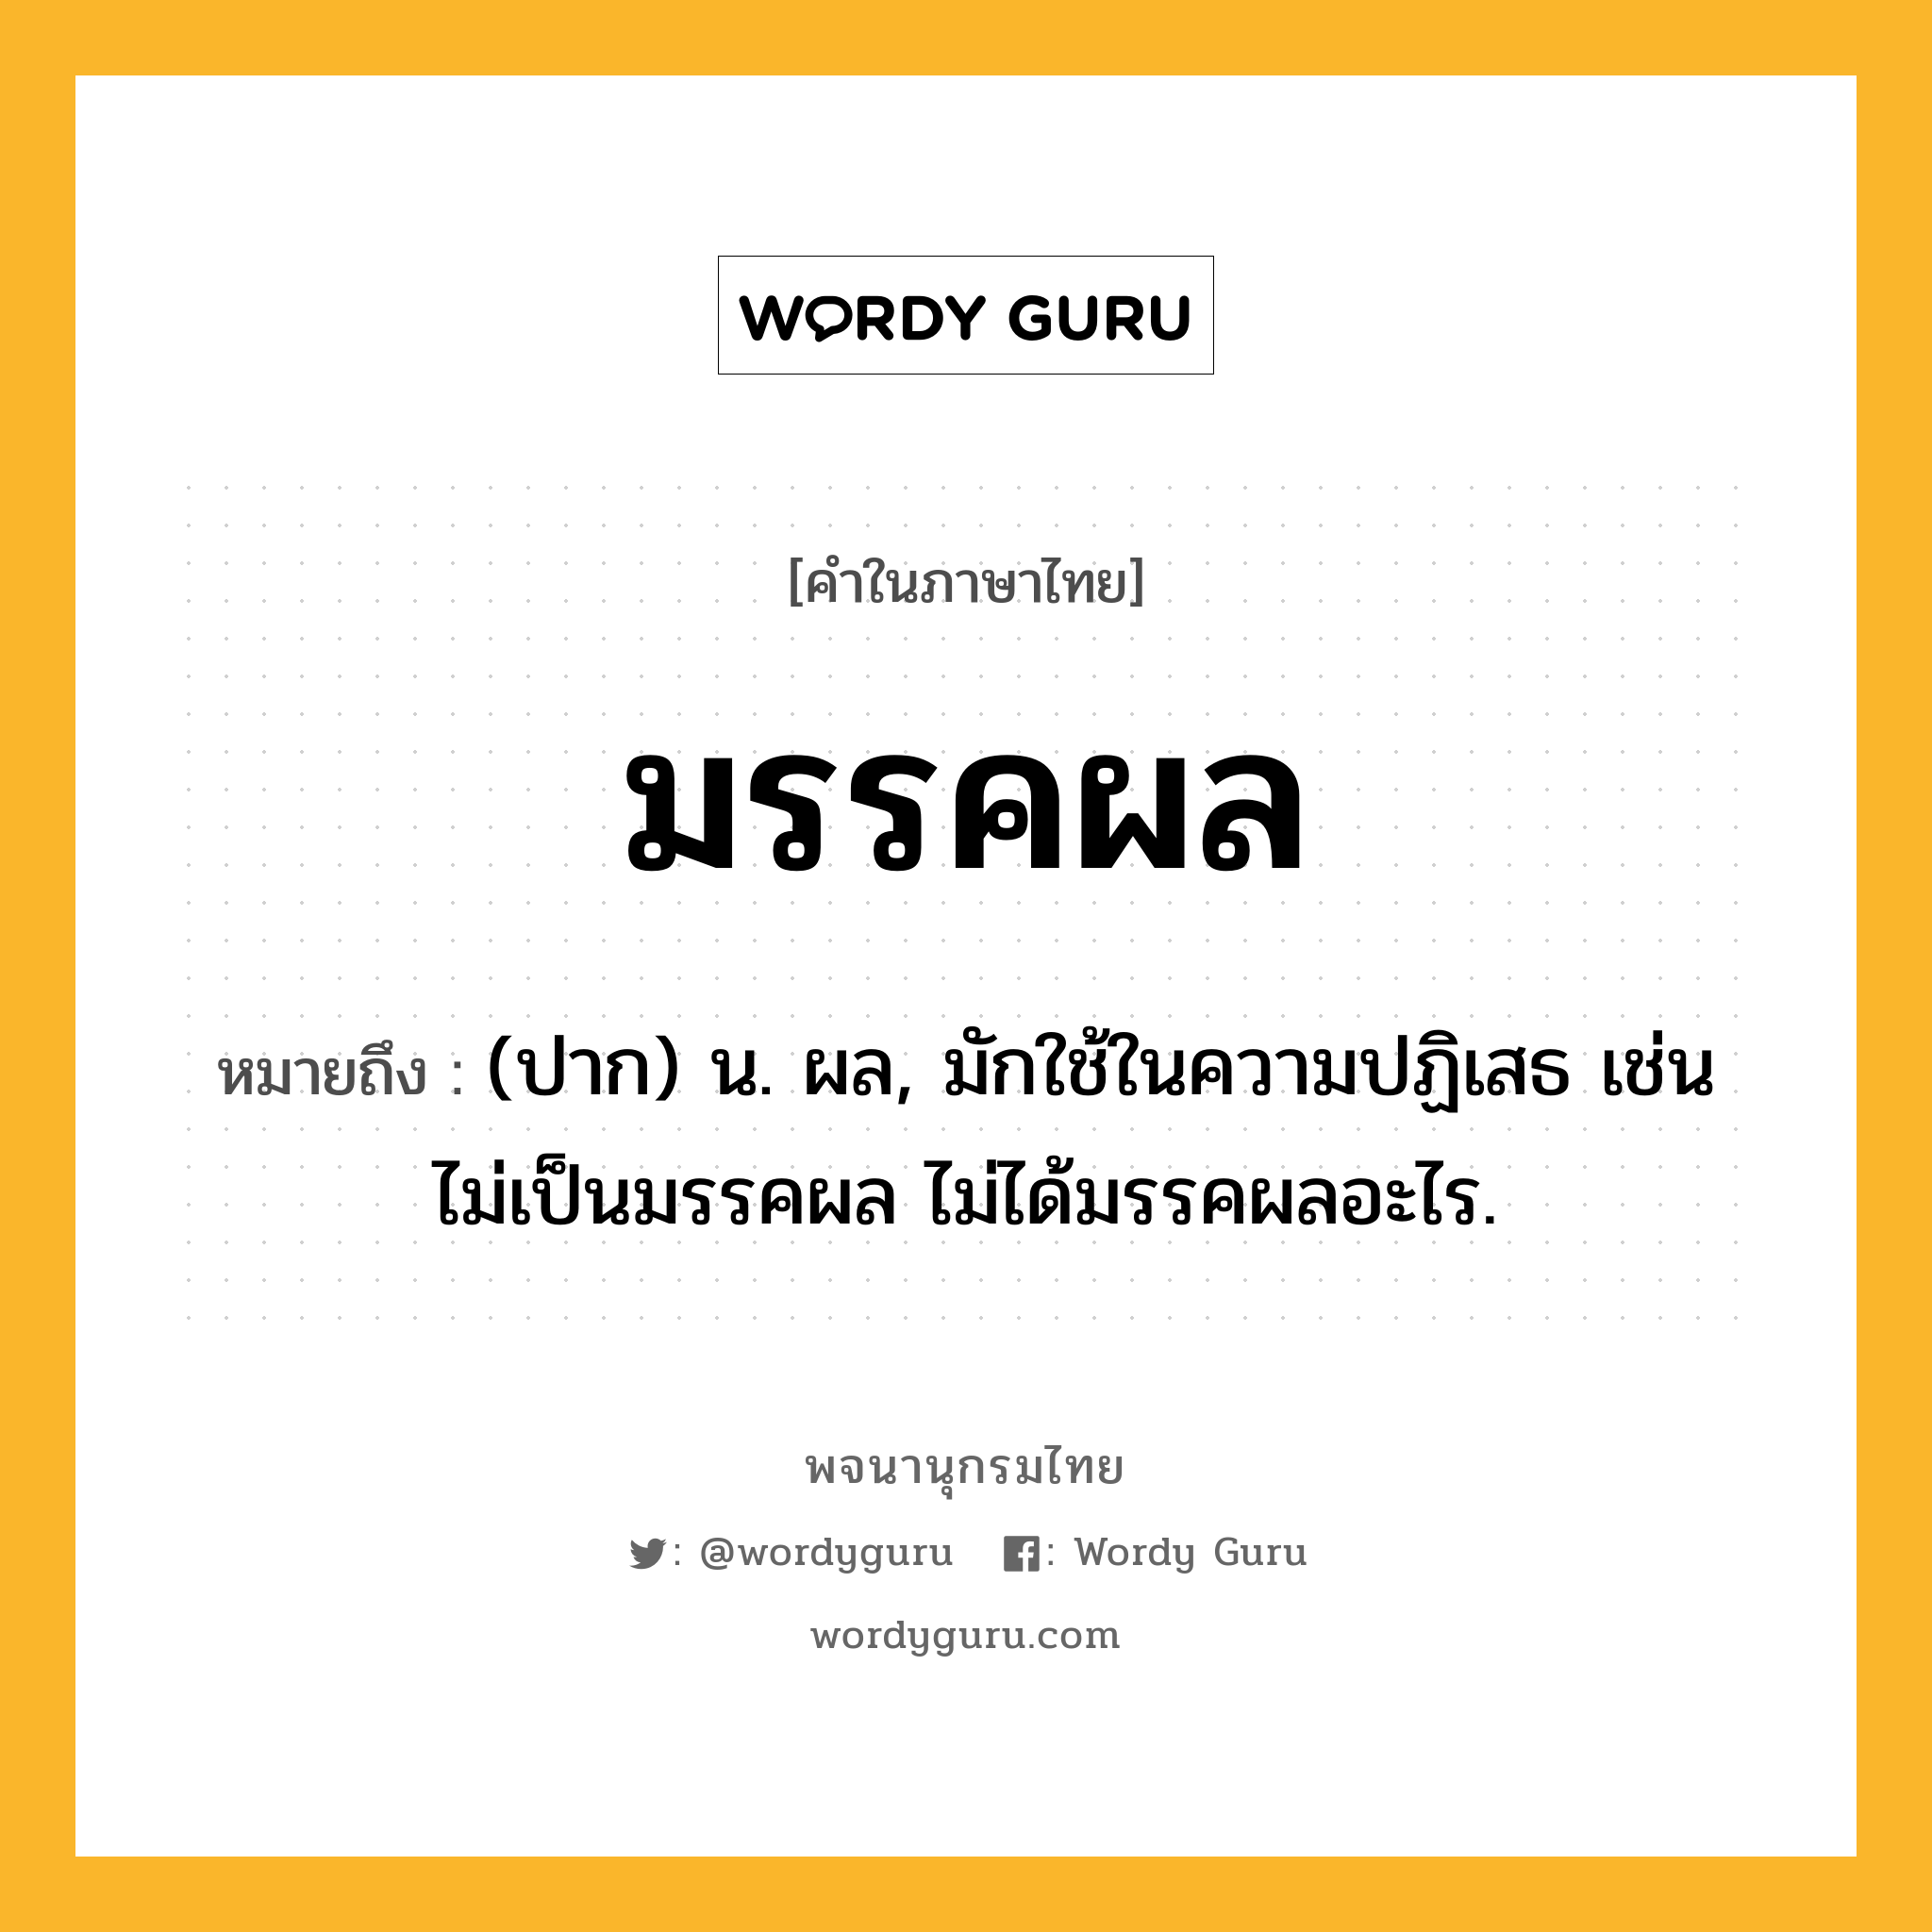 มรรคผล ความหมาย หมายถึงอะไร?, คำในภาษาไทย มรรคผล หมายถึง (ปาก) น. ผล, มักใช้ในความปฏิเสธ เช่น ไม่เป็นมรรคผล ไม่ได้มรรคผลอะไร.